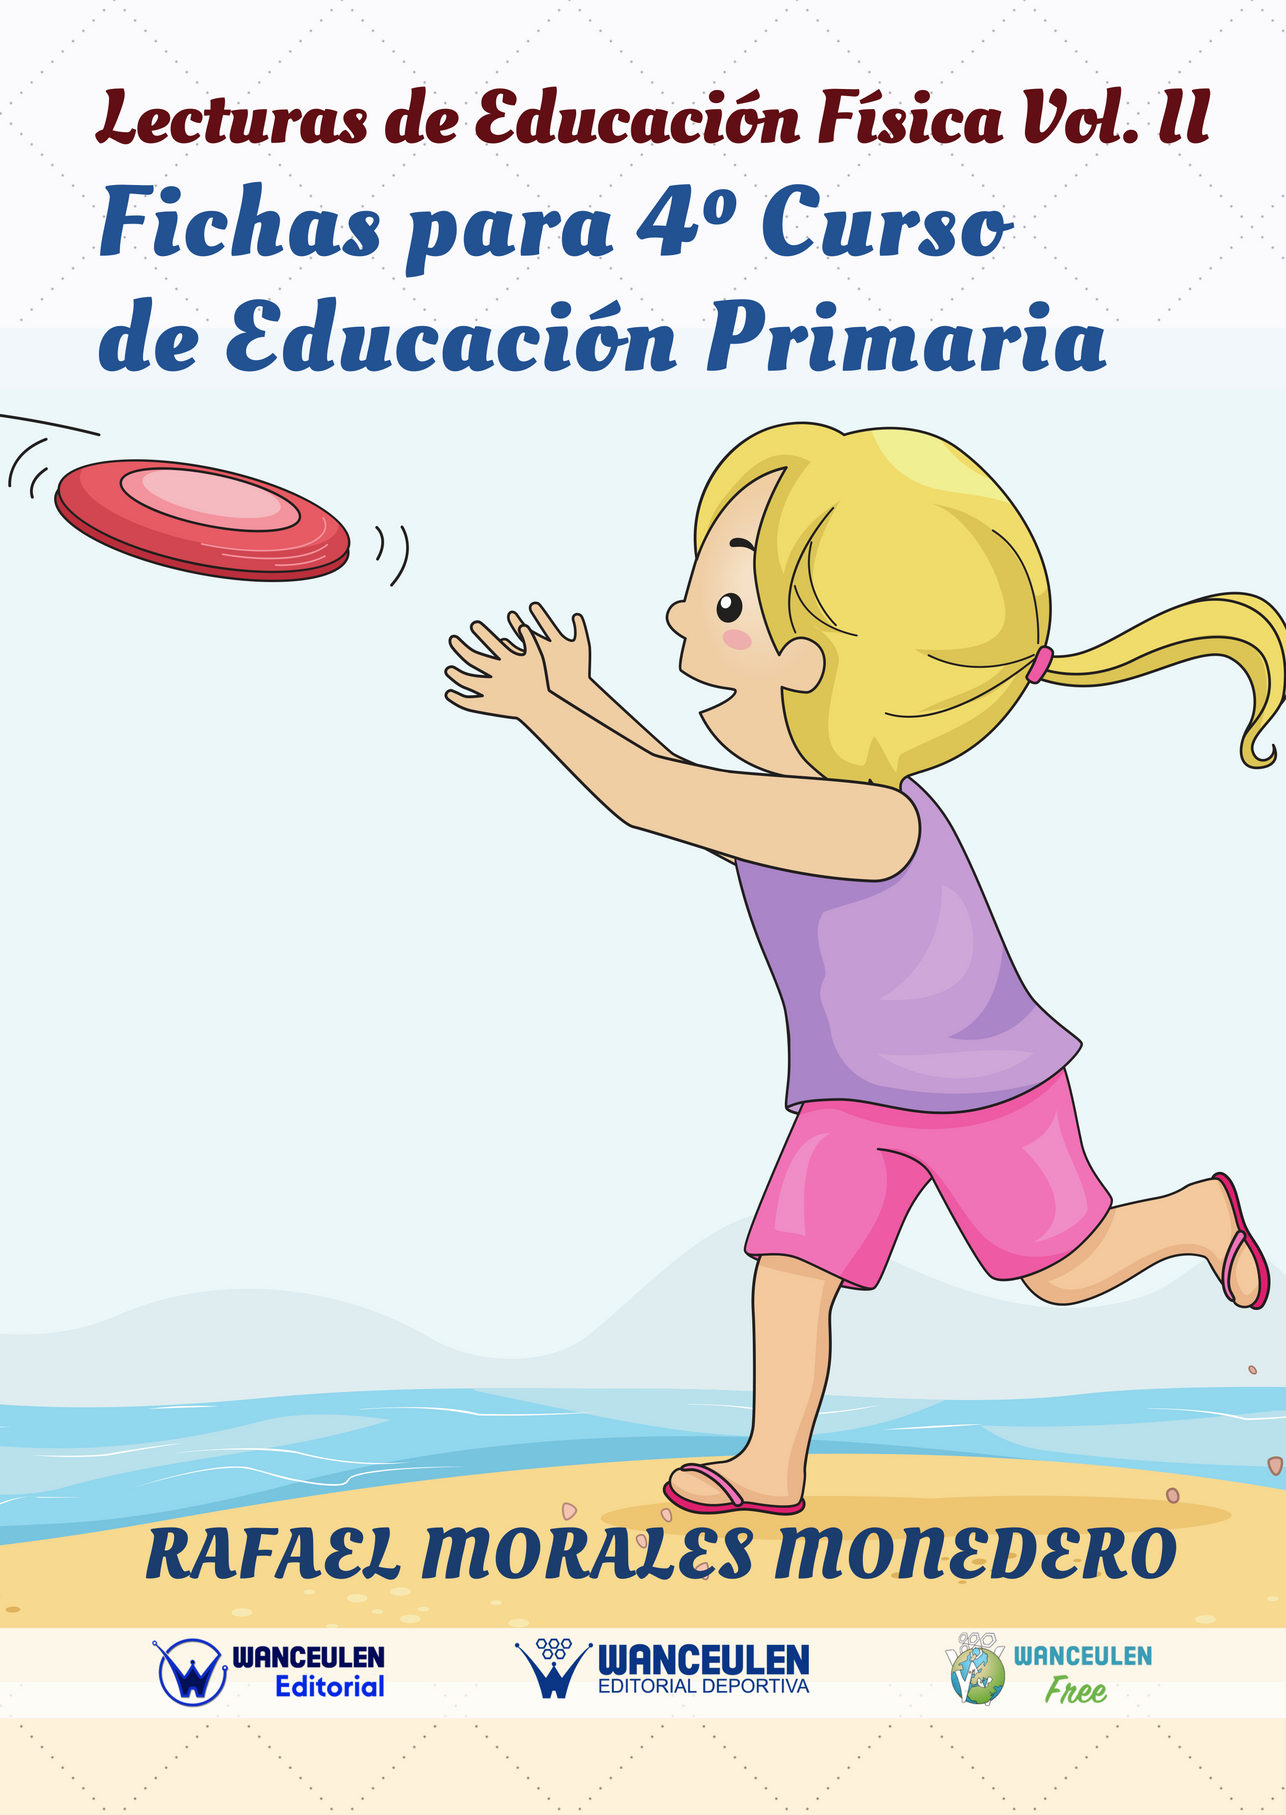 Lecturas: Educación Física y Deportes, Revista Digital